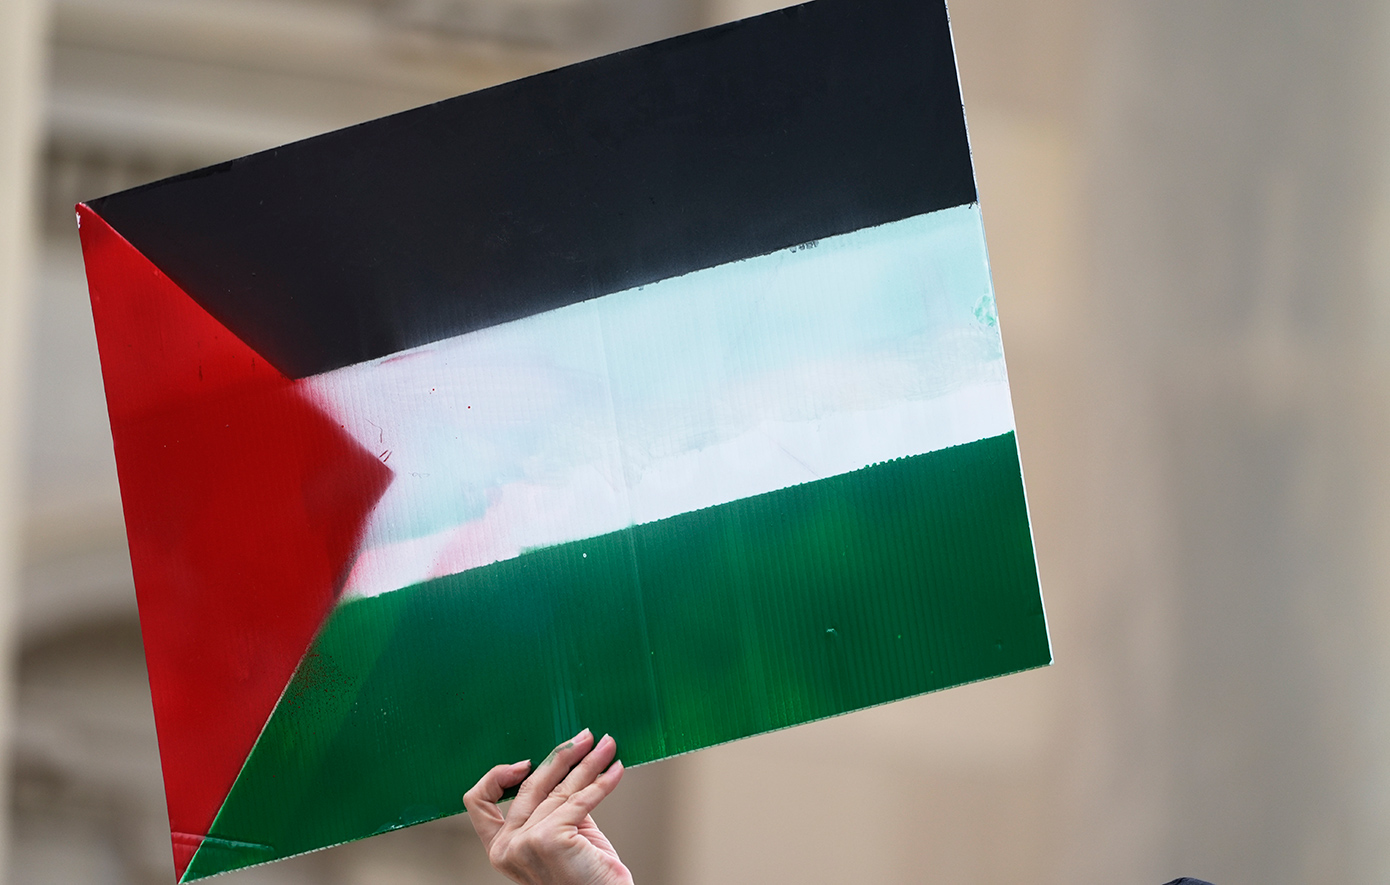 Χαμάς και Παλαιστινιακός Ισλαμικός Τζιχάντ εκφράζουν «ετοιμότητα» για την επίτευξη συμφωνίας για τον τερματισμό του πολέμου στη Γάζα